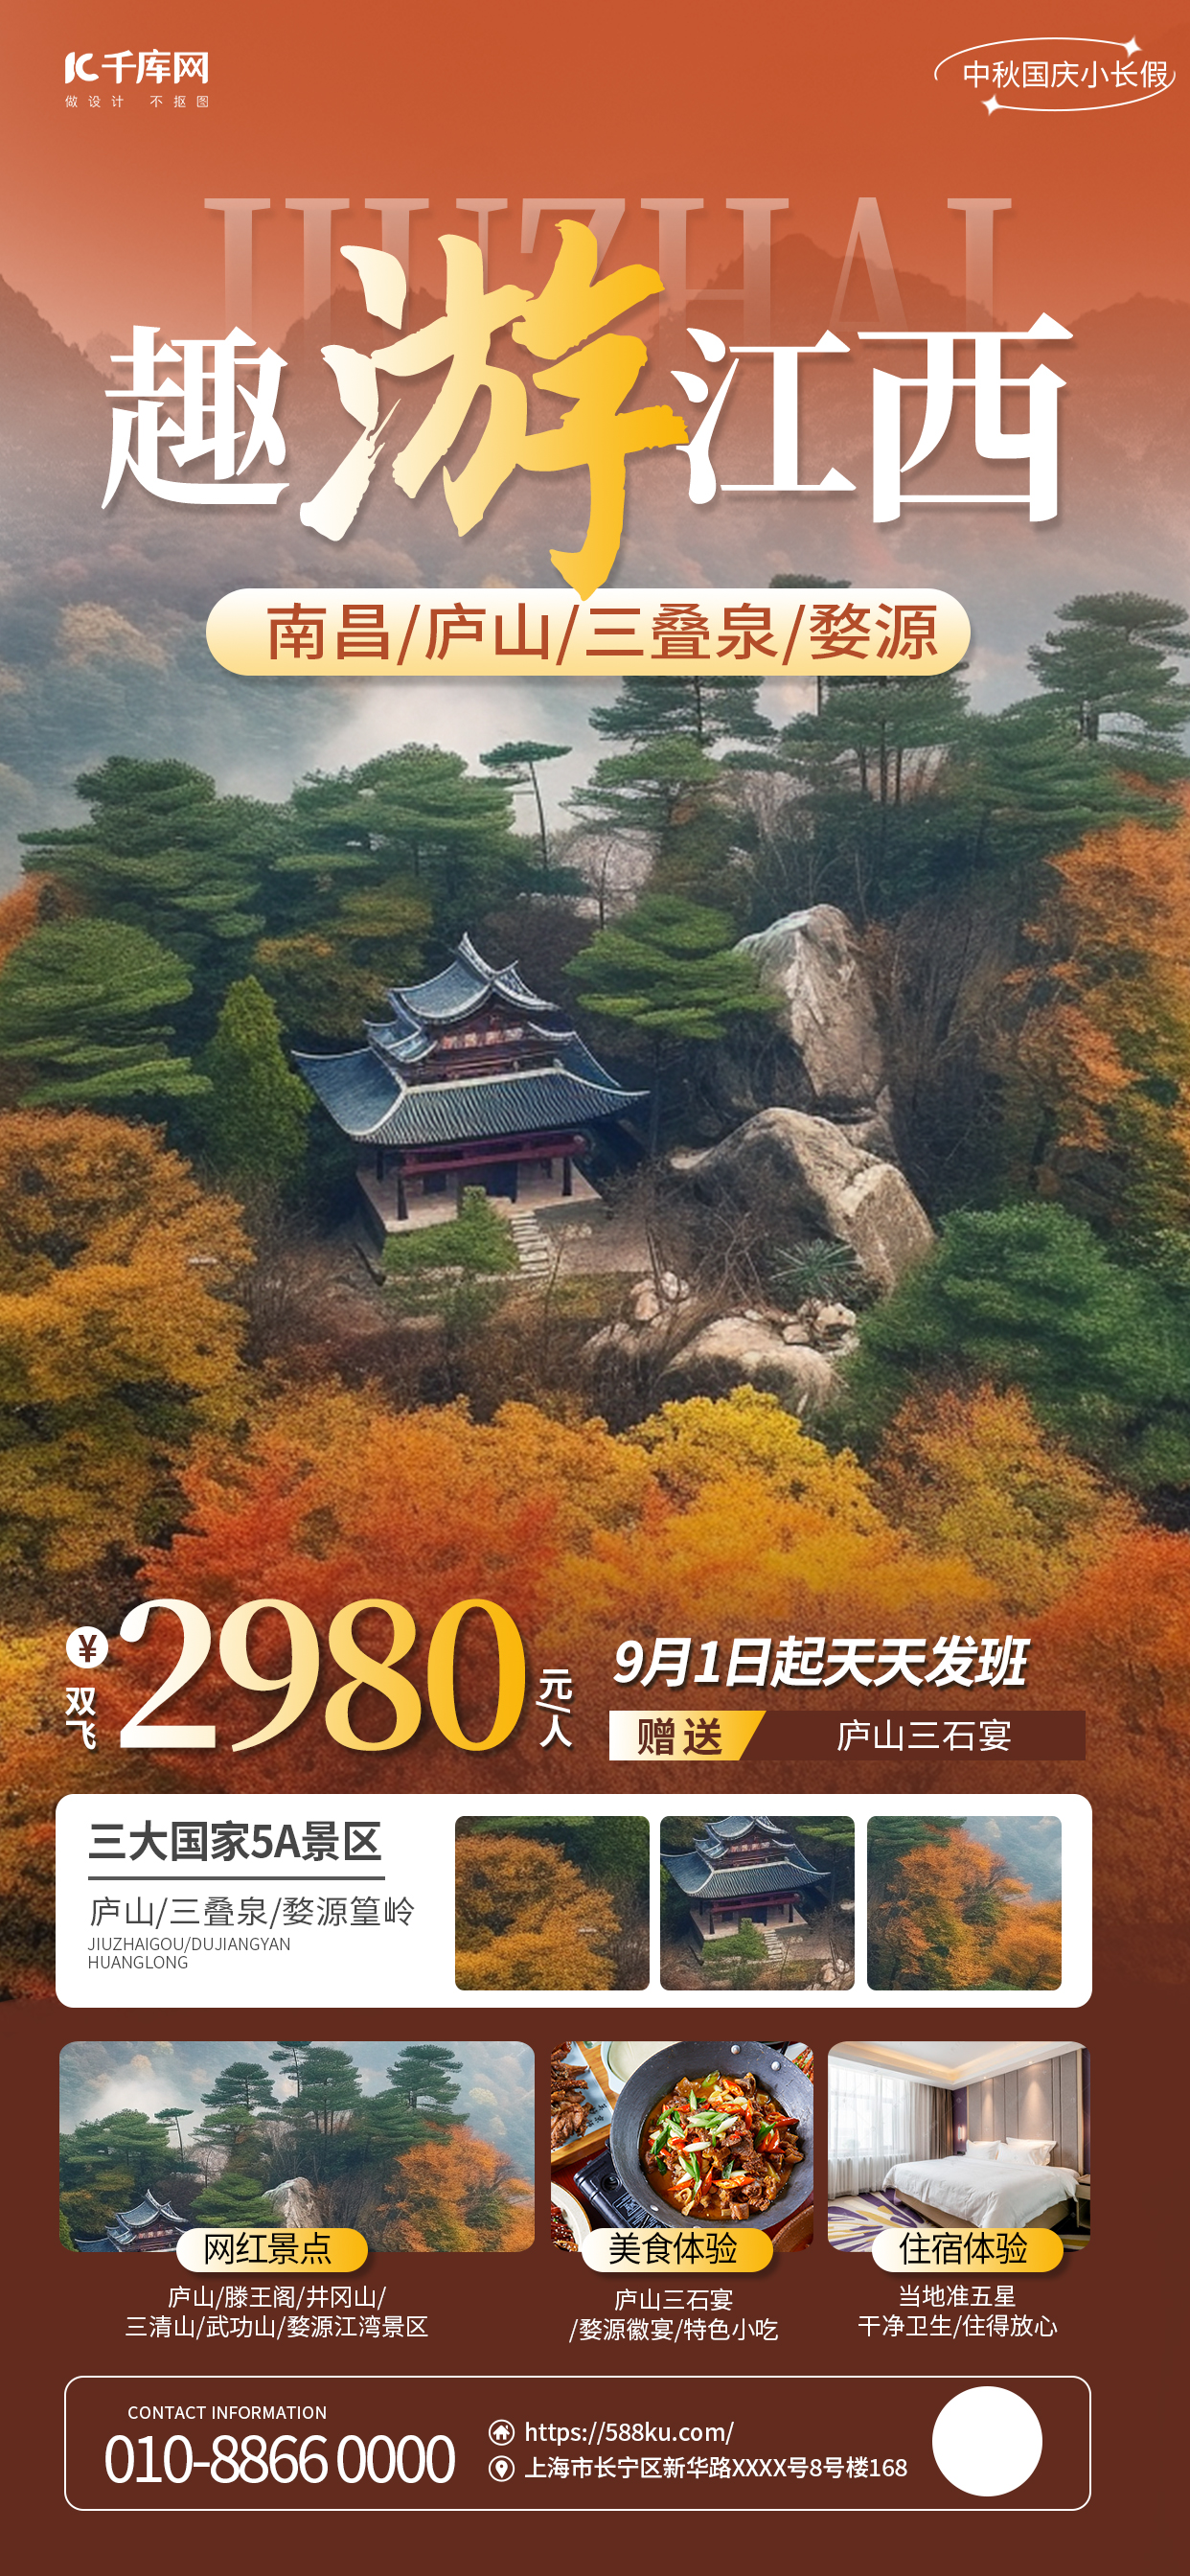 中秋国庆旅游AIGG模版简约橙色广告宣传海报图片